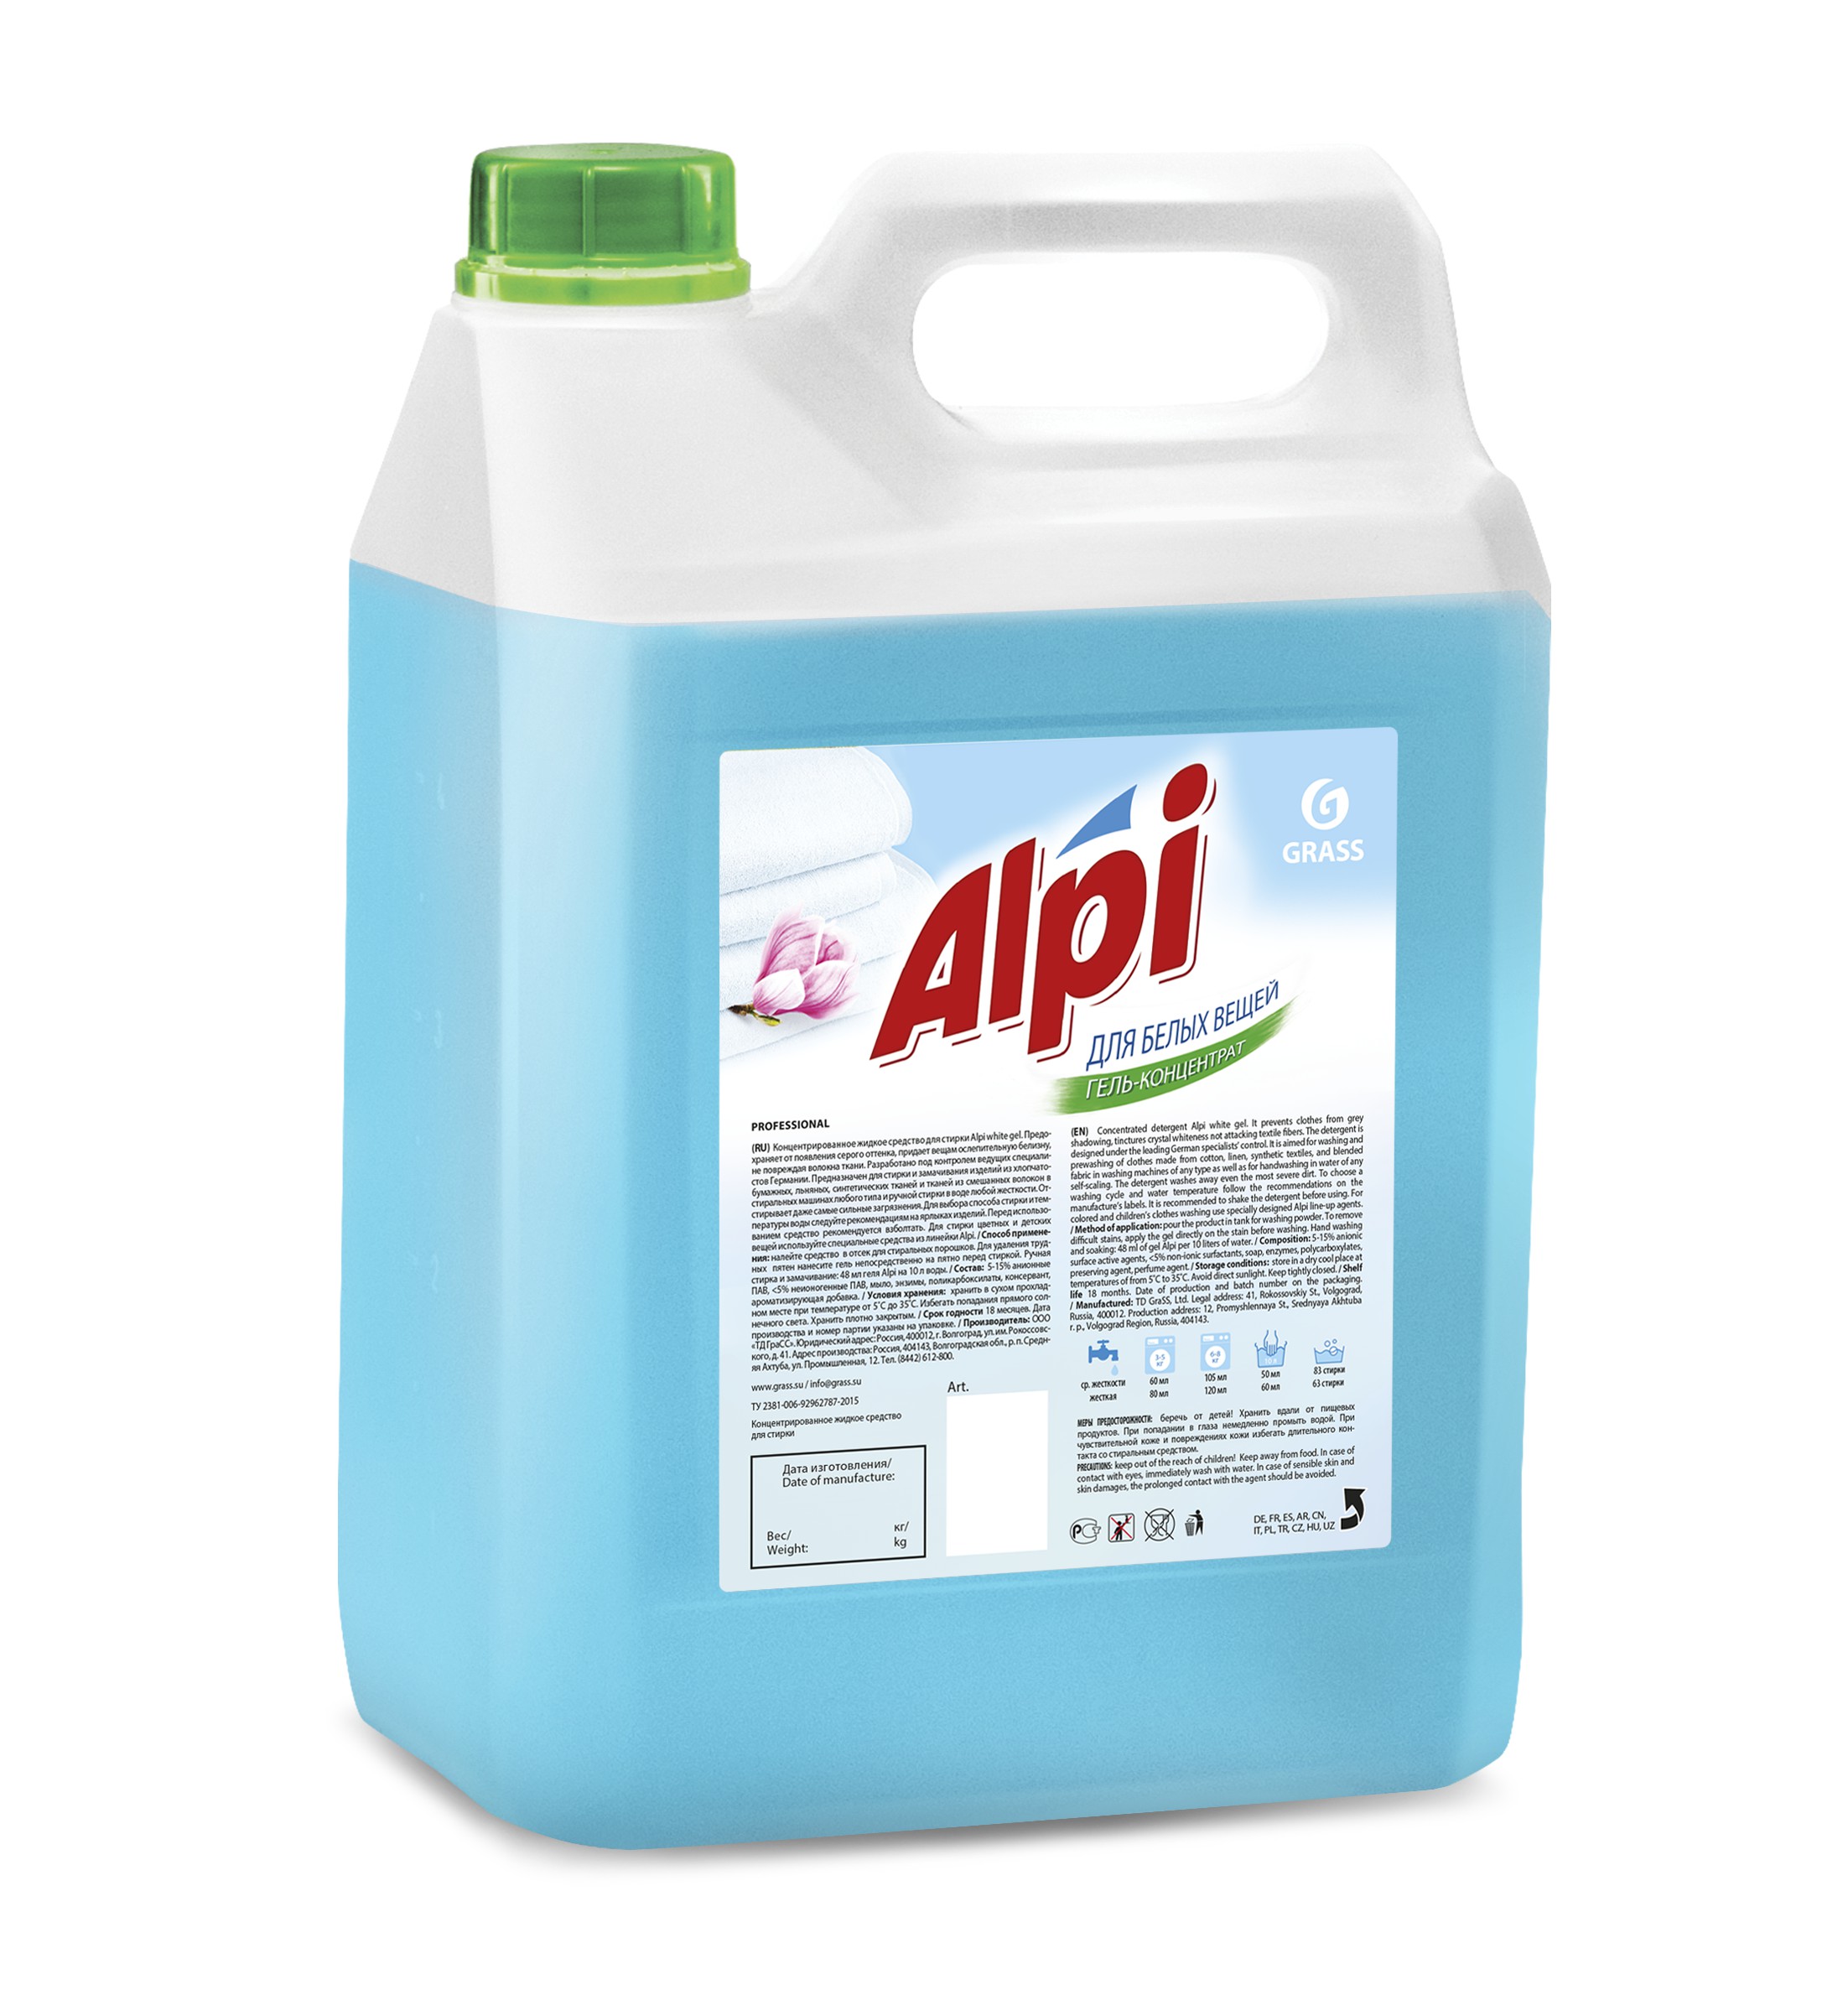 ALPI  Гель-концентрат для белых вещей 5,0кг  GRASS_1